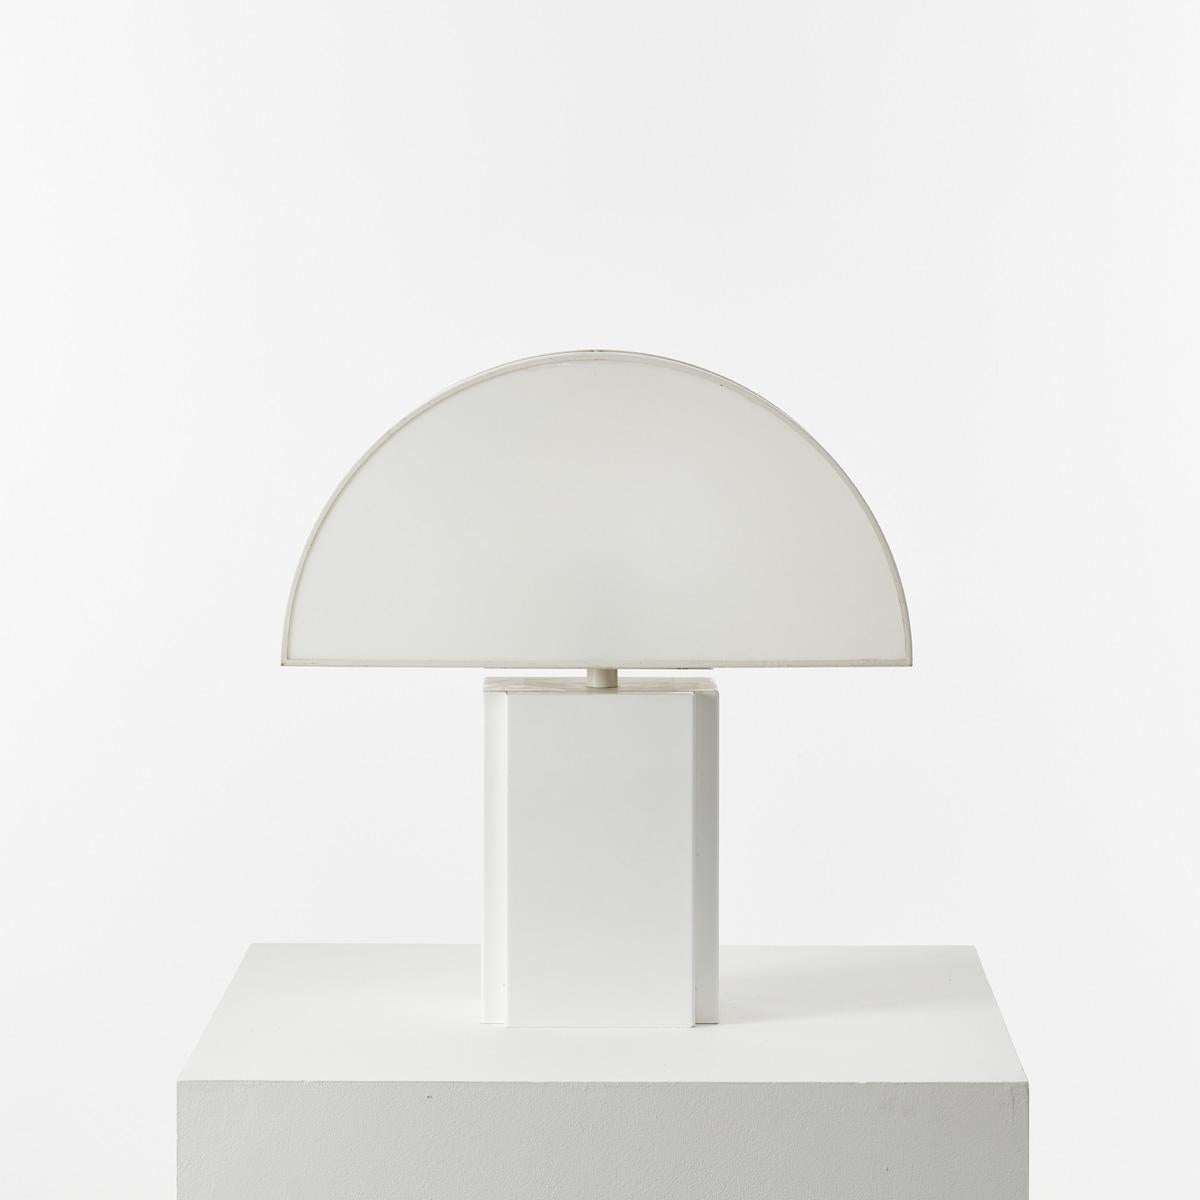 Grande lampe de table Olympe conçue par Harvey Guzzini pour ED, Italie, années 1970. L'abat-jour démilune est particulièrement agréable à éclairer, une demi-lune de lumière ambiante à travers de l'acrylique semi-opaque. Elle possède une base en